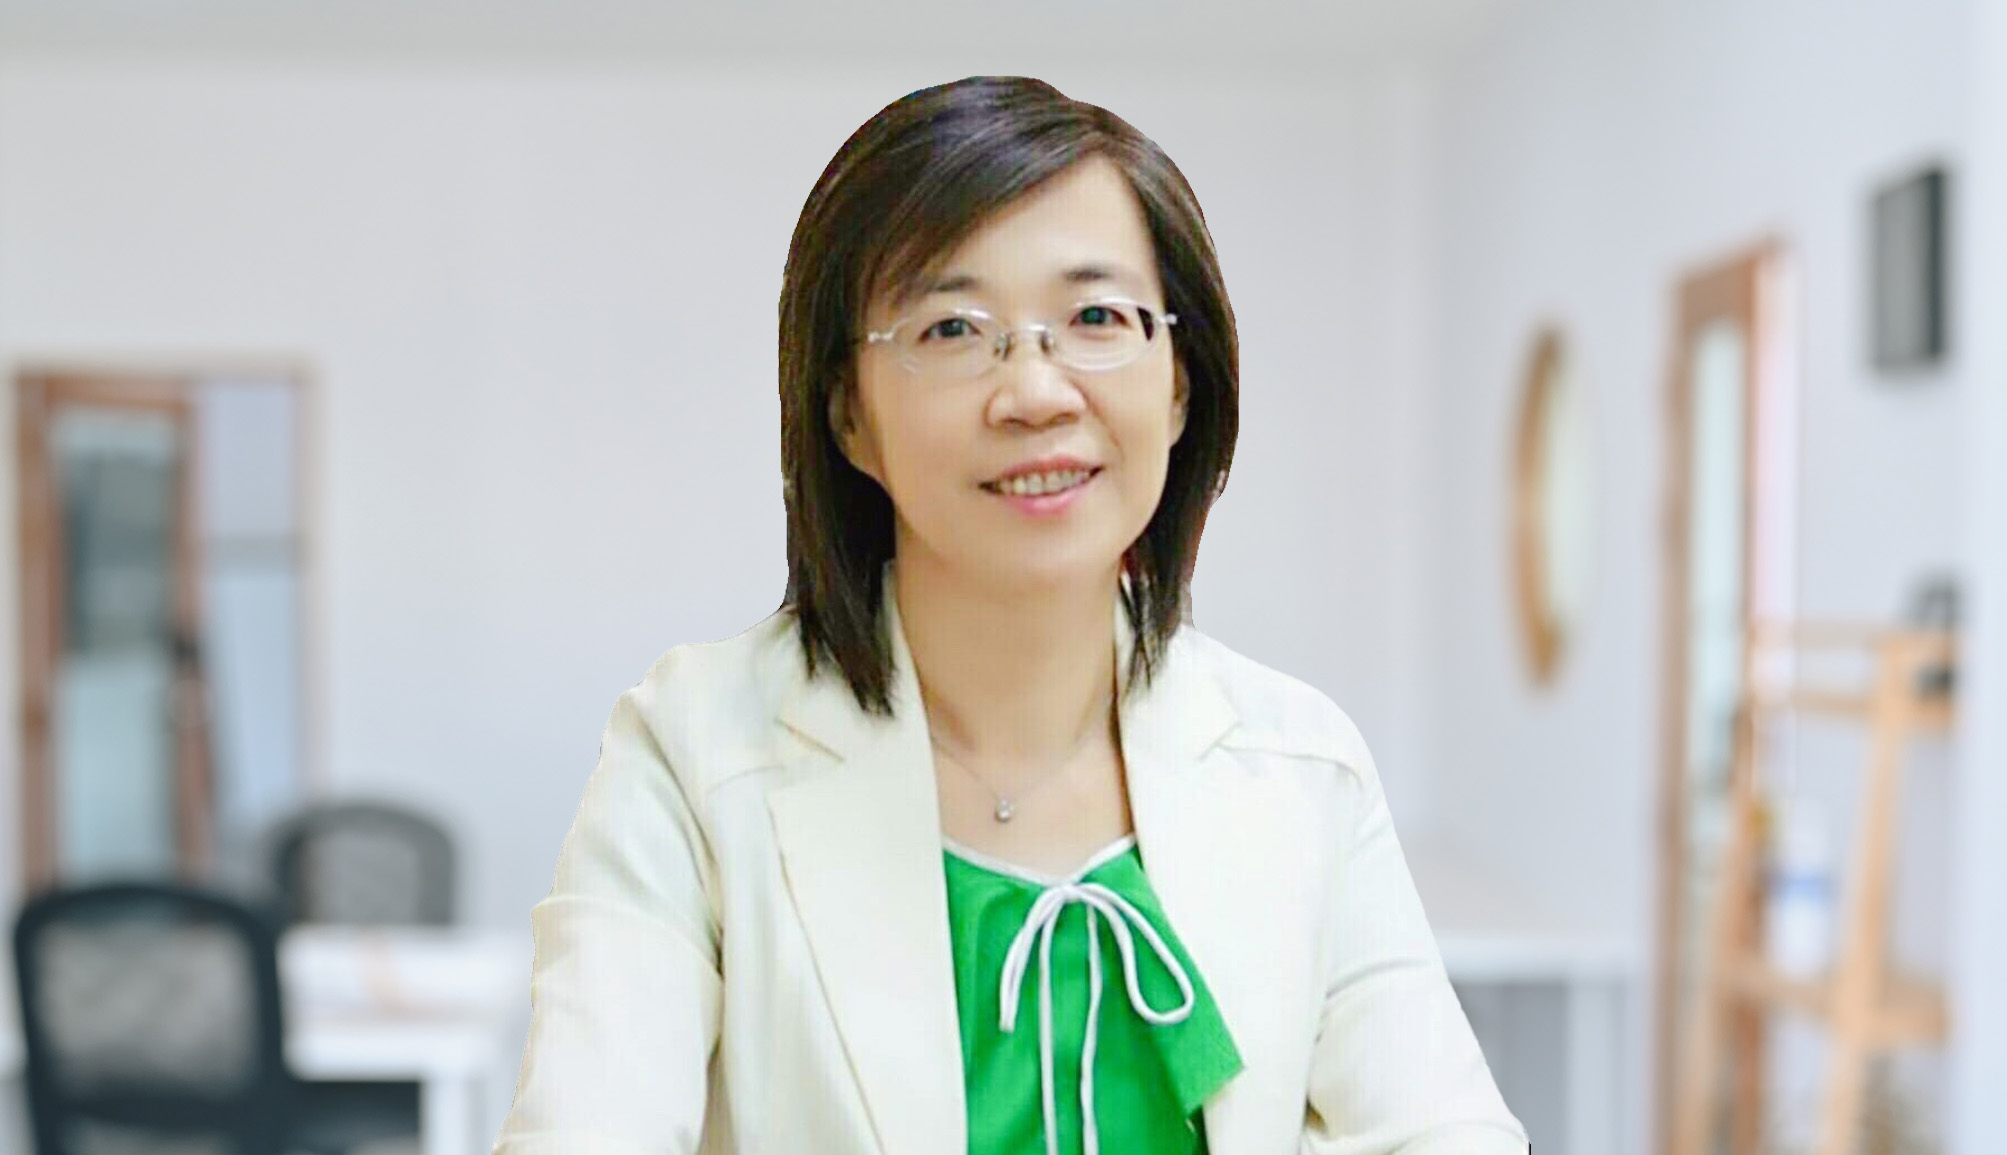 Tác giả: Lý Ngọc Thiền - Chủ tịch Hiệp hội tâm lý về tư vấn y tế và sức khỏe Đài Loan/ Giáo sư đặc biệt tại Đại học Điều dưỡng và Sức khỏe Quốc gia Đài Bắc